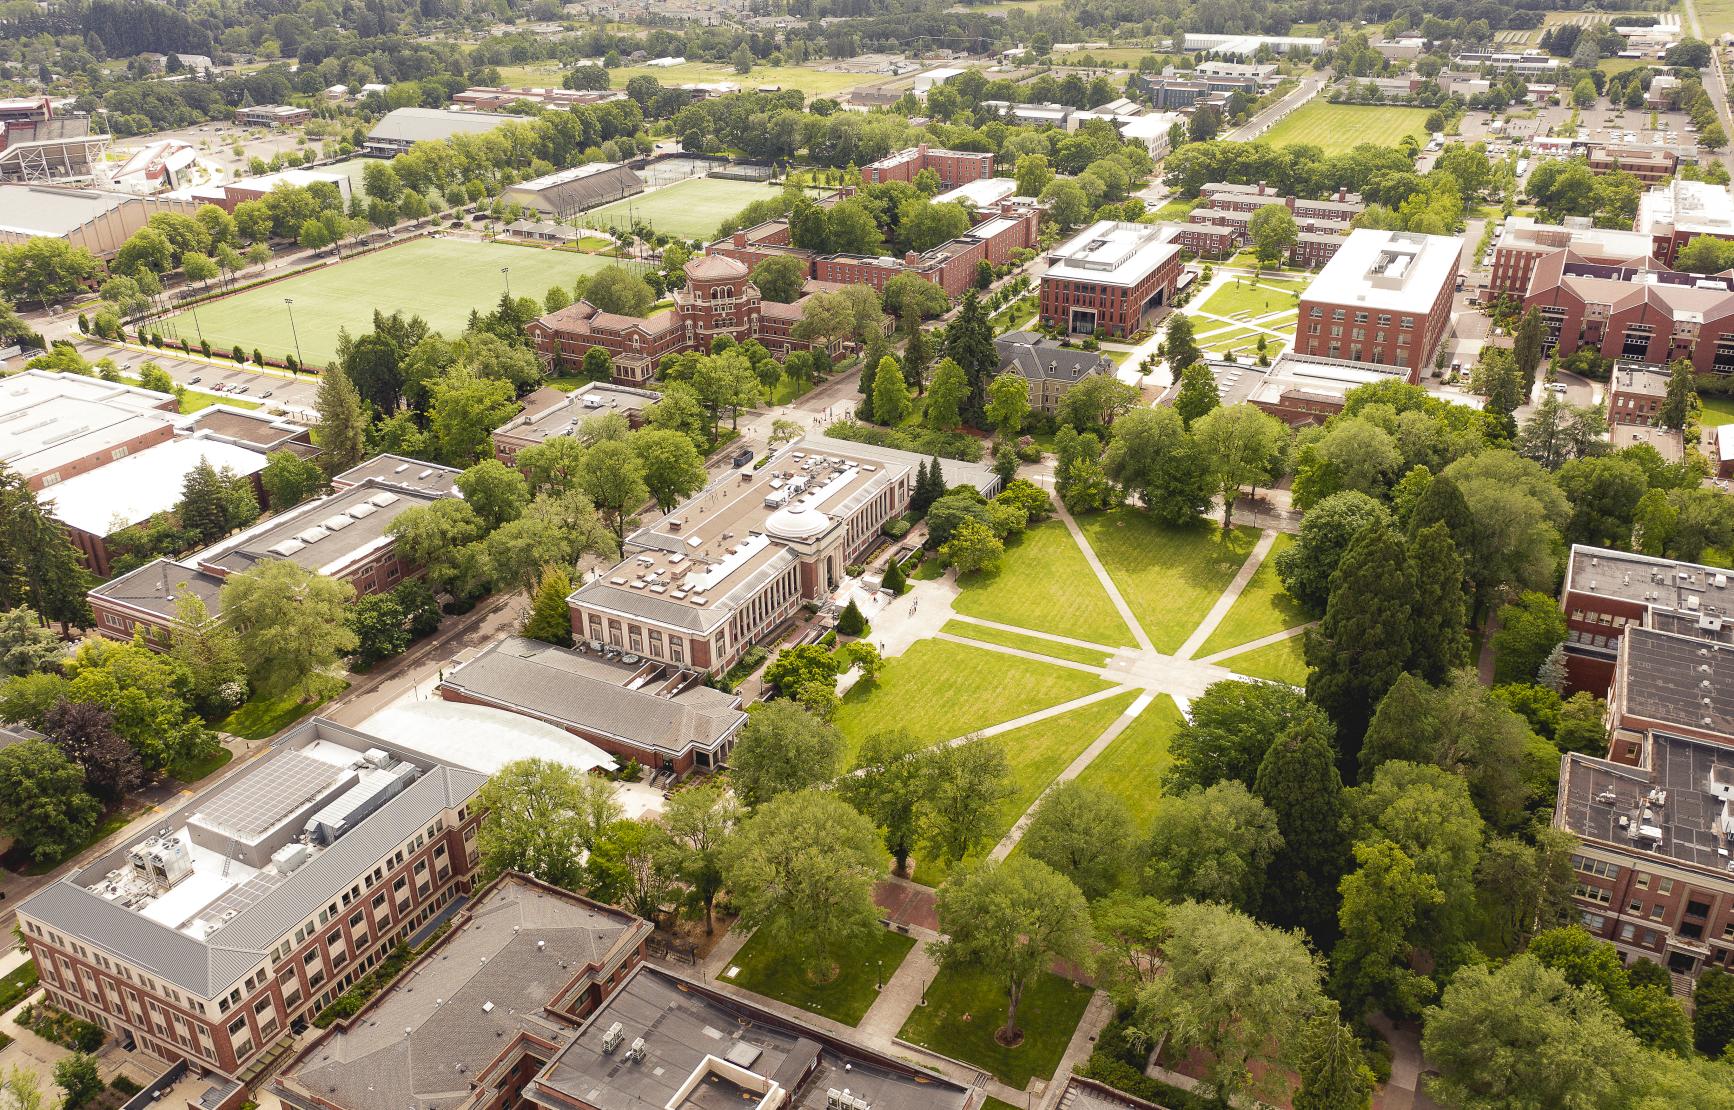 aerial photo of Corvallis campus.